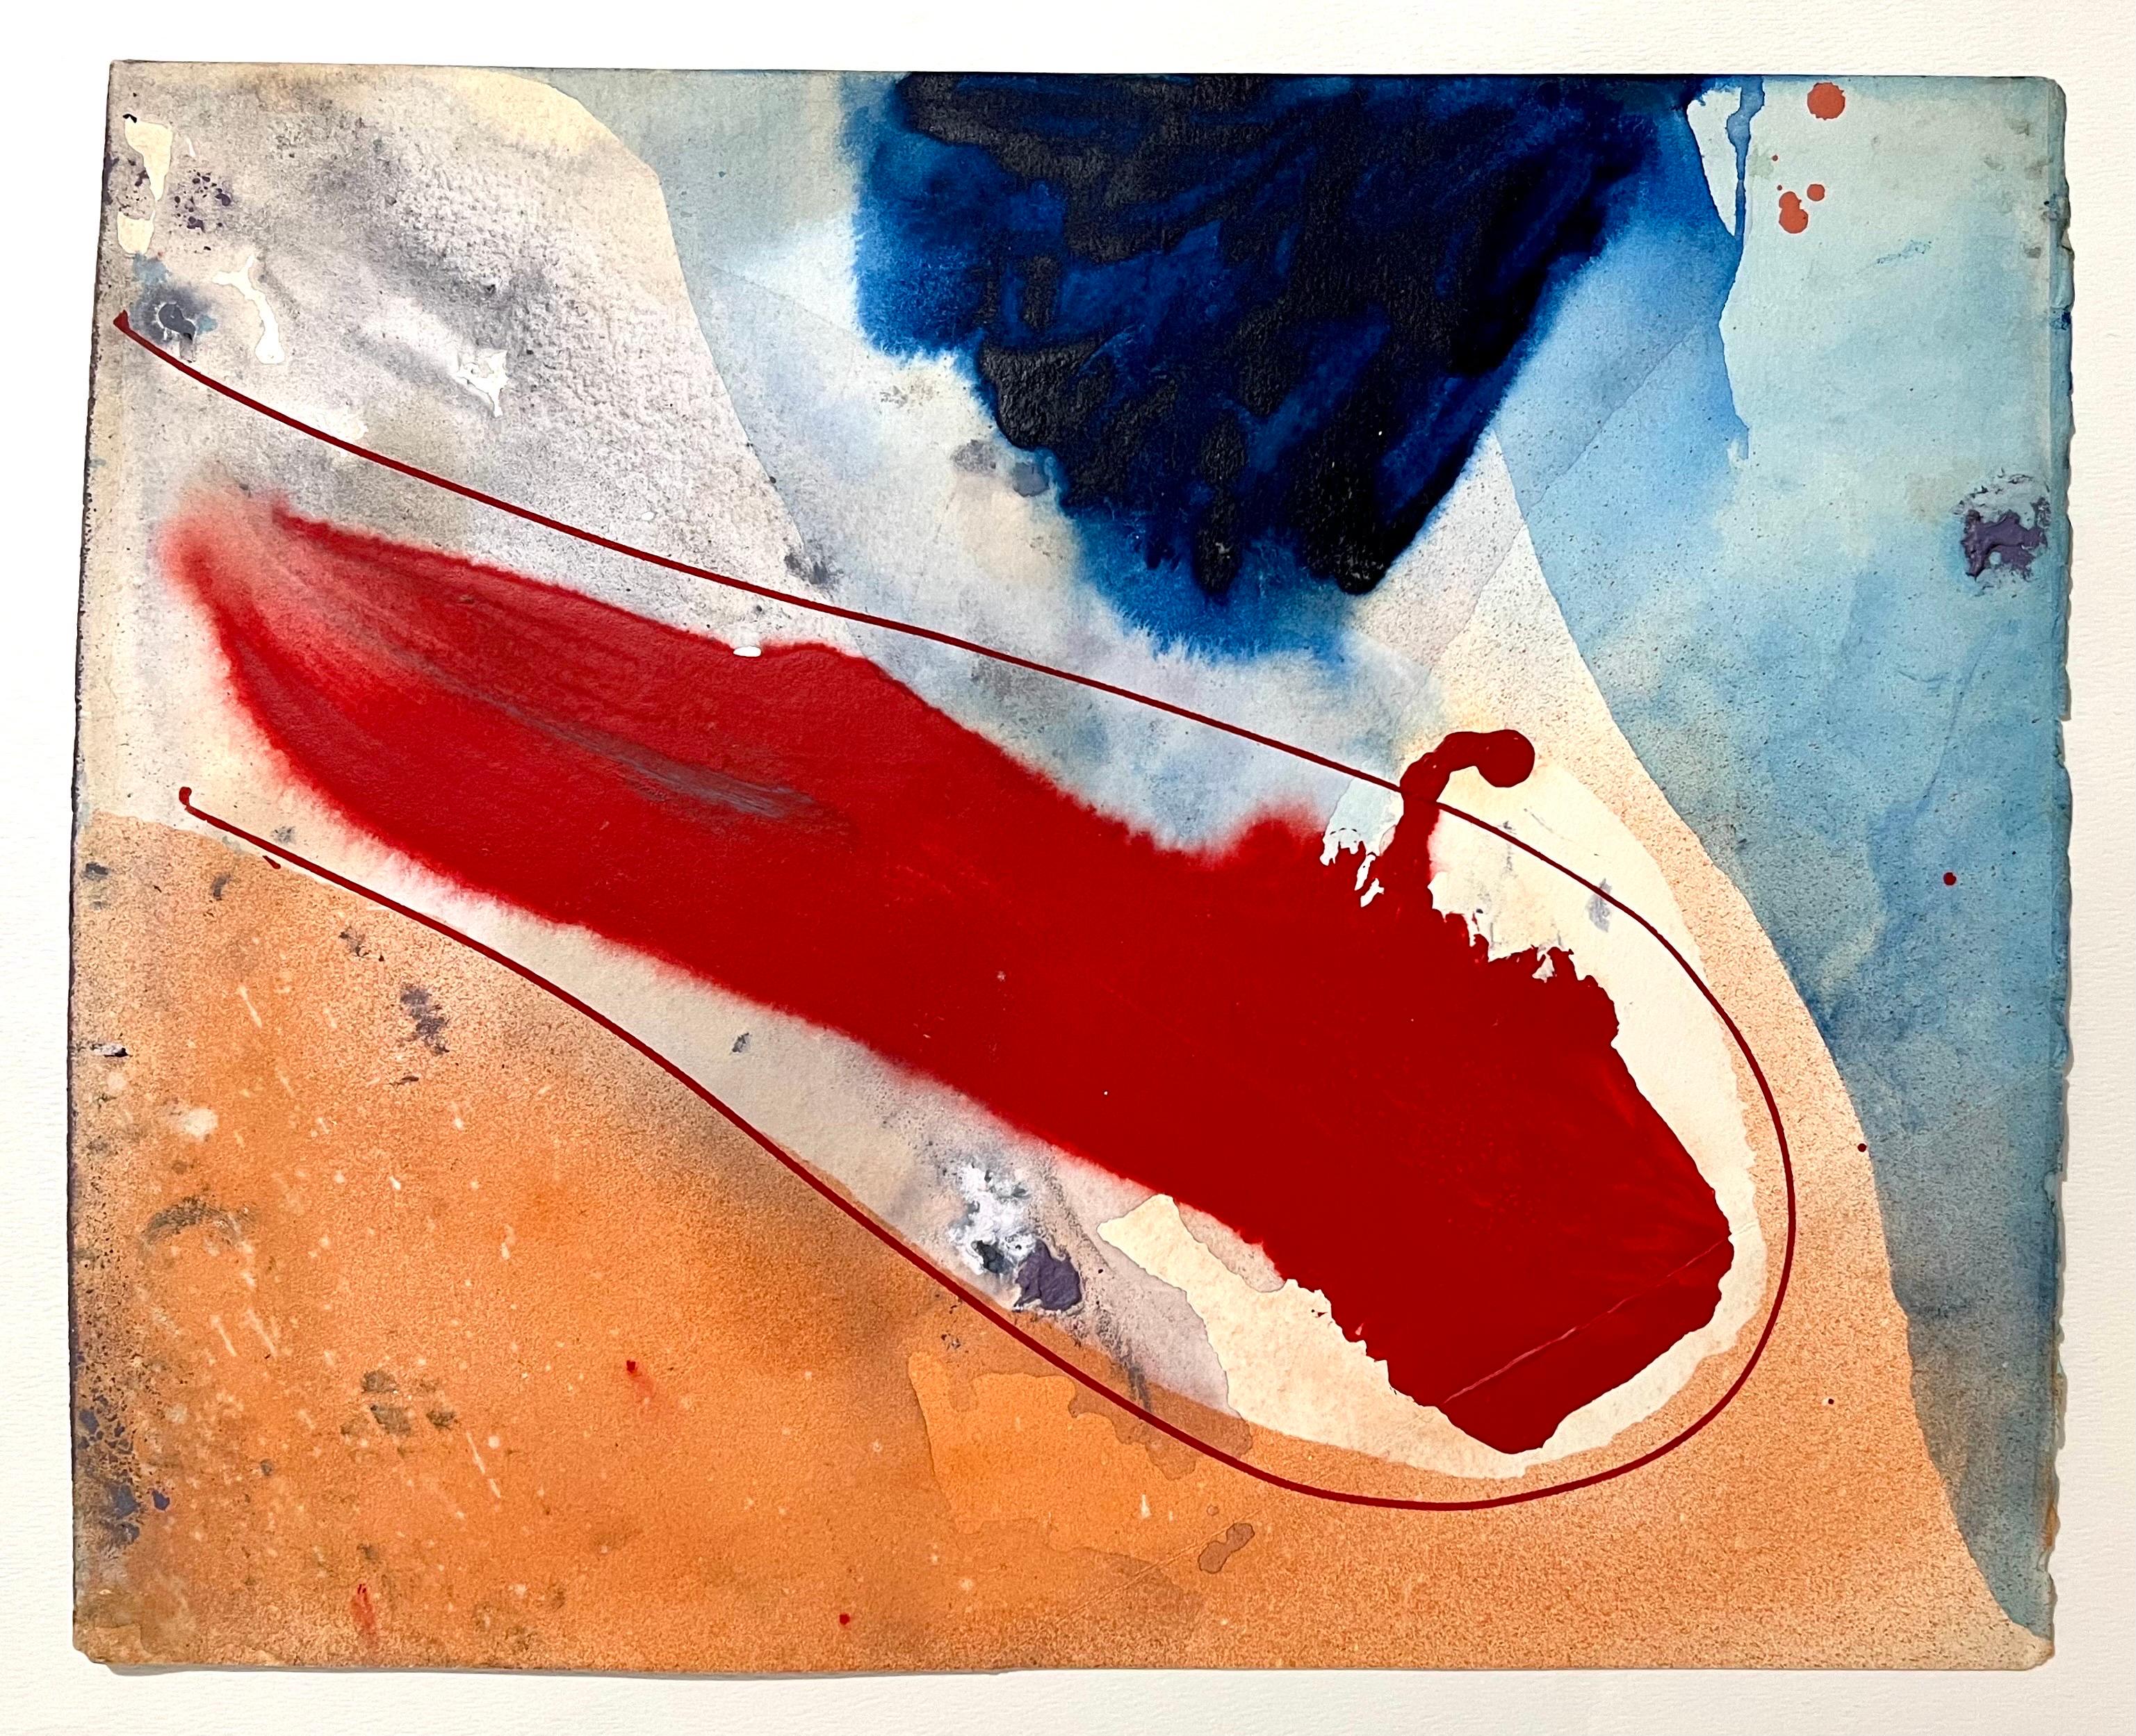 Michael Jay Knigin (Amerikaner, 1942 - 2011)
Ohne Titel (abstrakt)
Gemälde in Mischtechnik auf Papier mit Acryl, Aquarell und Gouache
Nachlassstempel auf der Rückseite (nicht handsigniert)
Abmessungen: 13.75